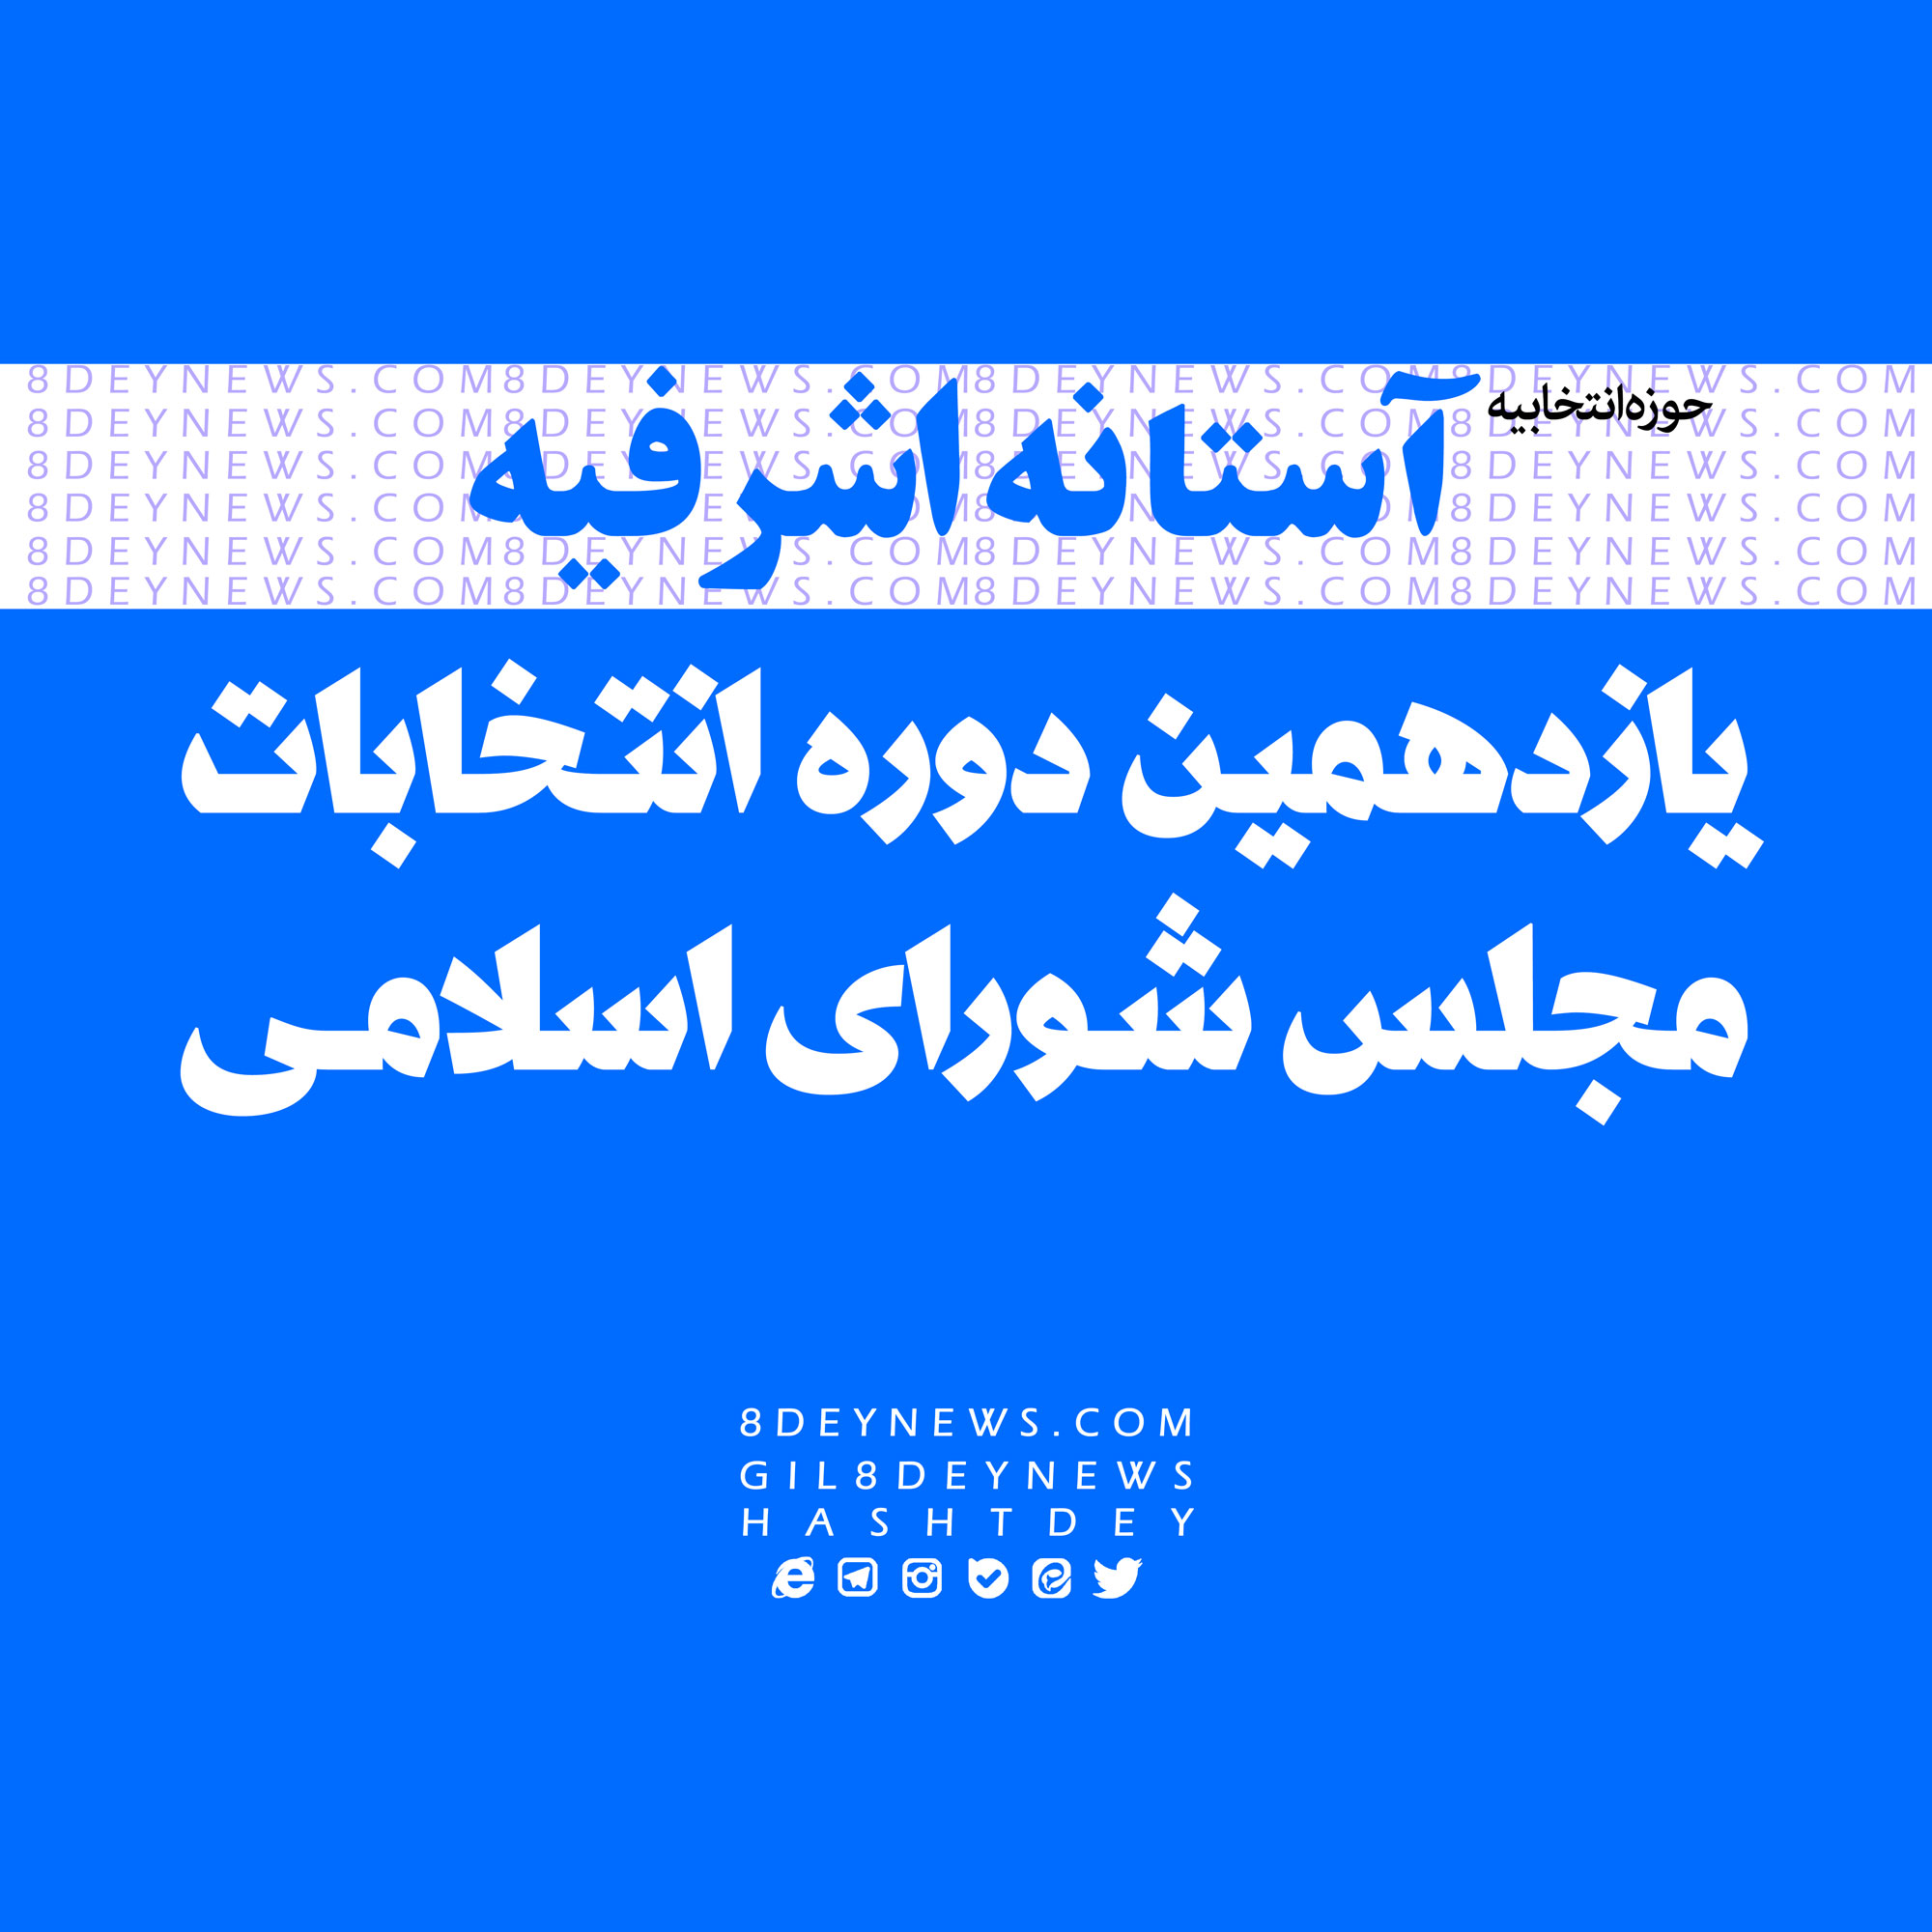 اسامی نامزدهای نهایی در حوزه انتخابیه آستانه اشرفیه اعلام شد